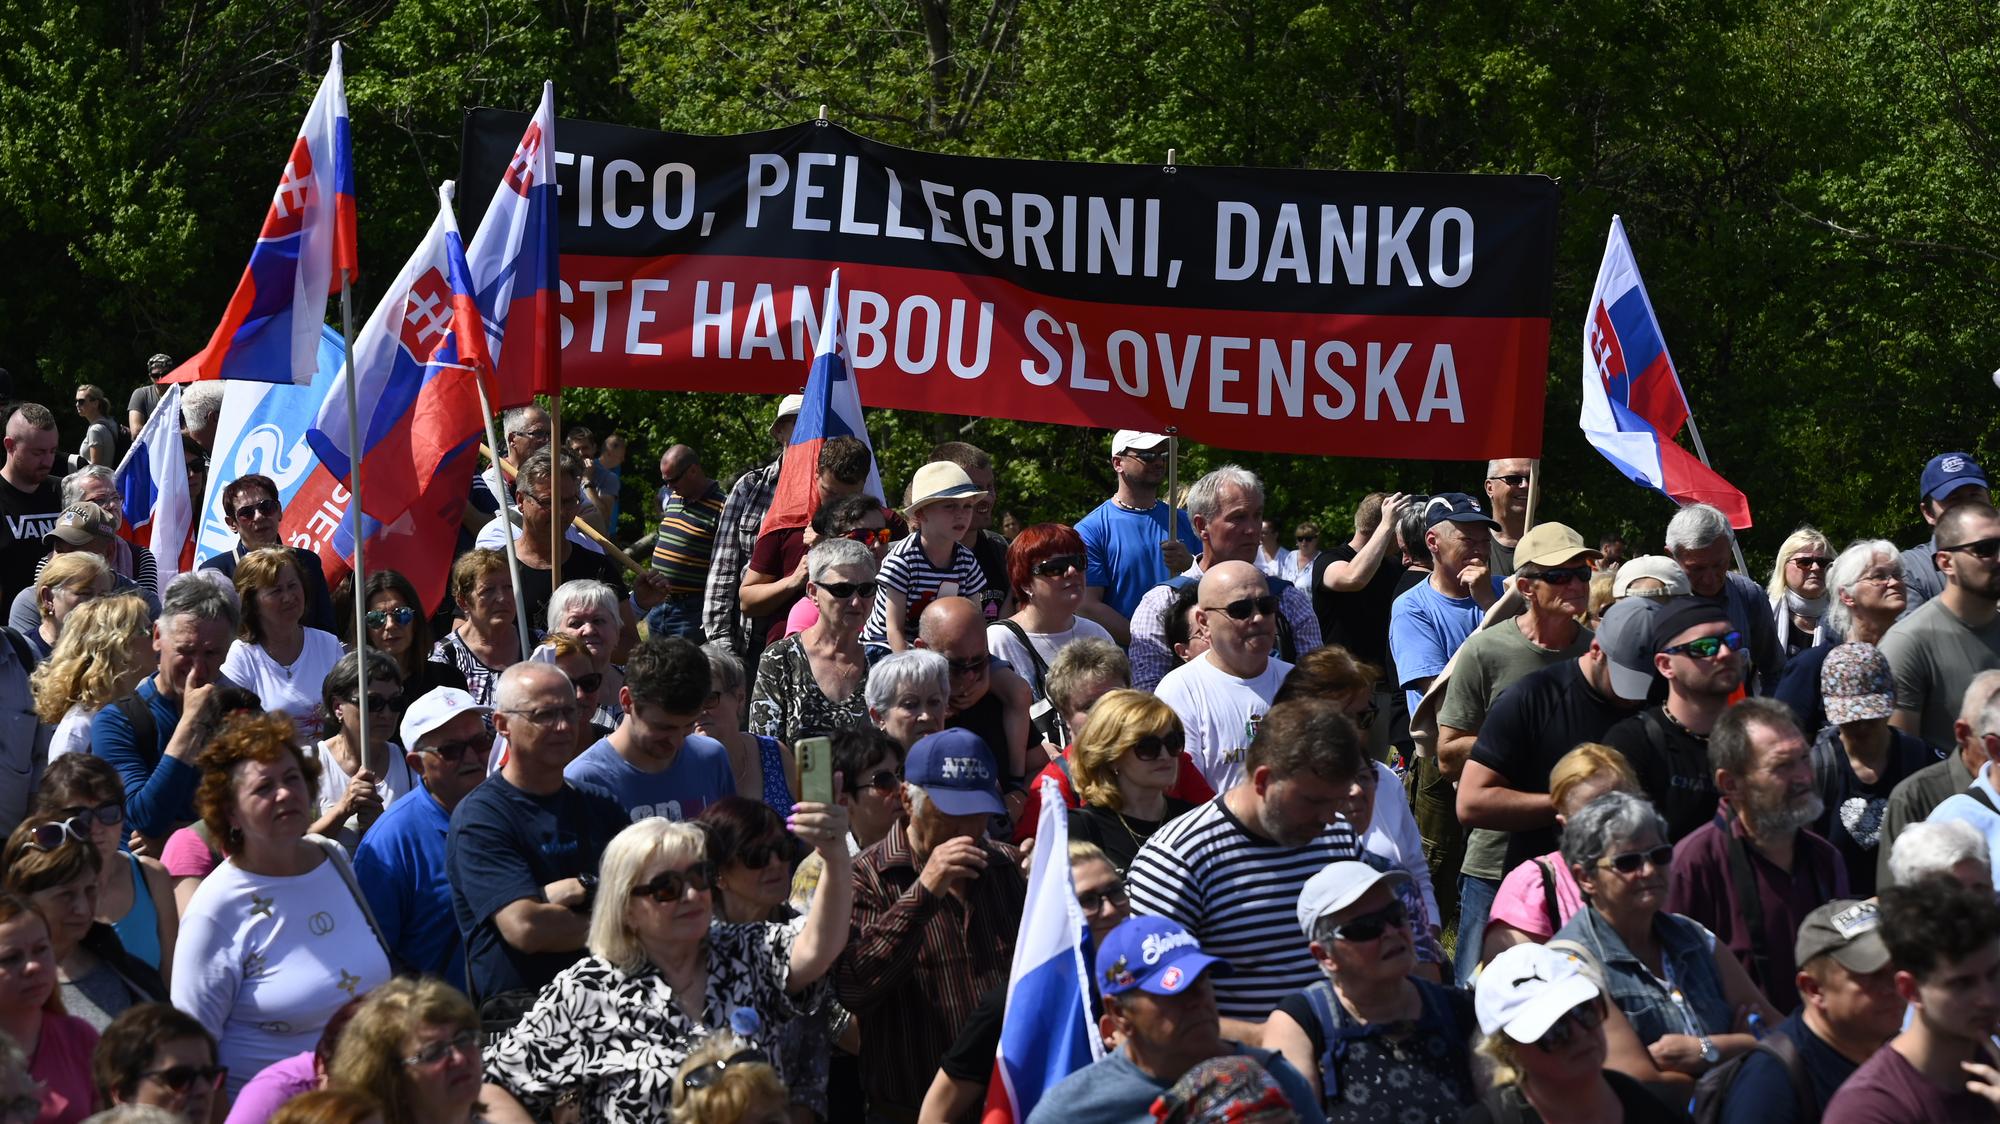 Ľudia držia slovenské vlajky a transparent na spomienkovom podujatí pri príležitostí 105. výročia tragickej smrti generála Milana Rastislava Štefánika.